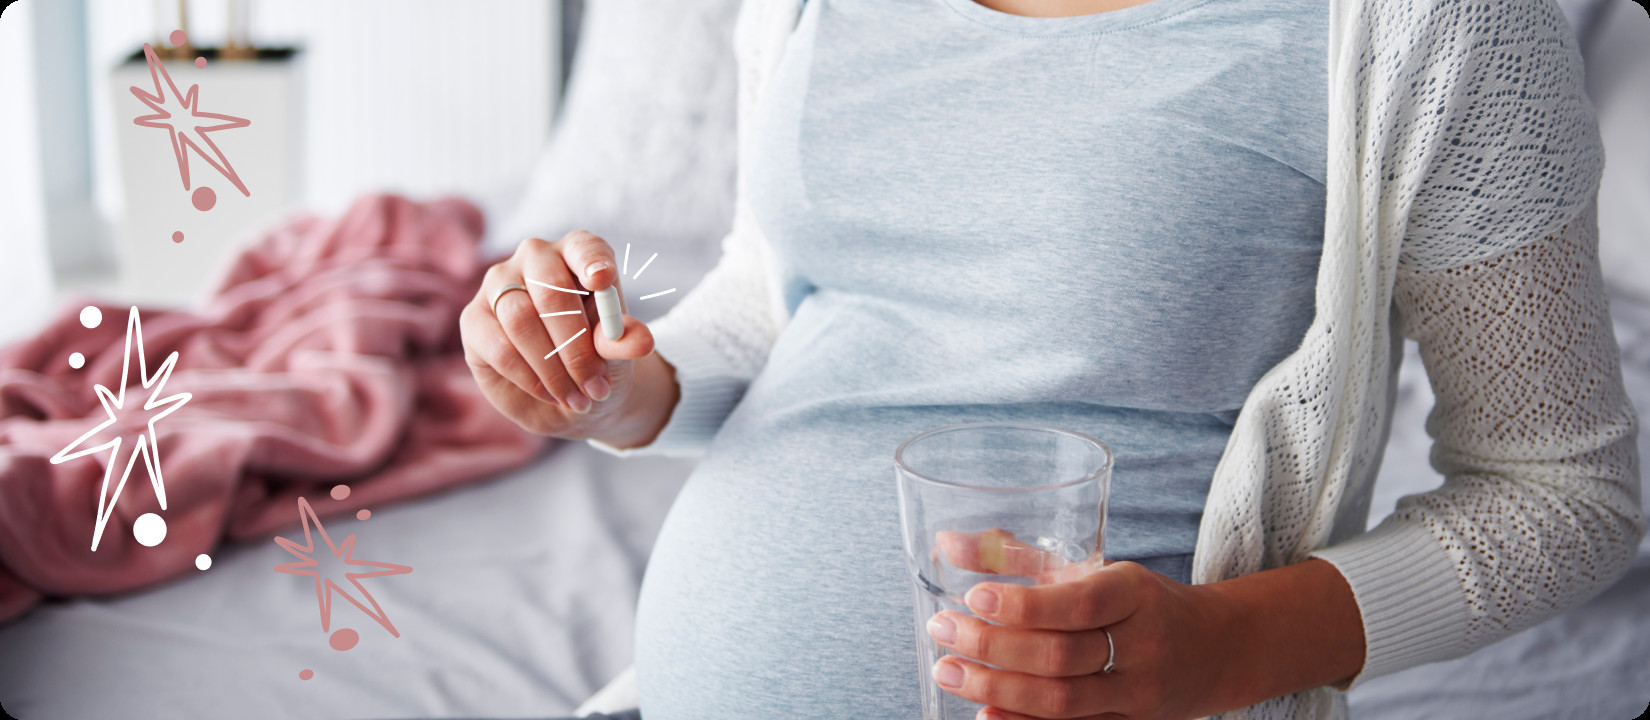 Терапия нарушения фертильности у мужчин: перспективные результаты европейских исследований uMEDp